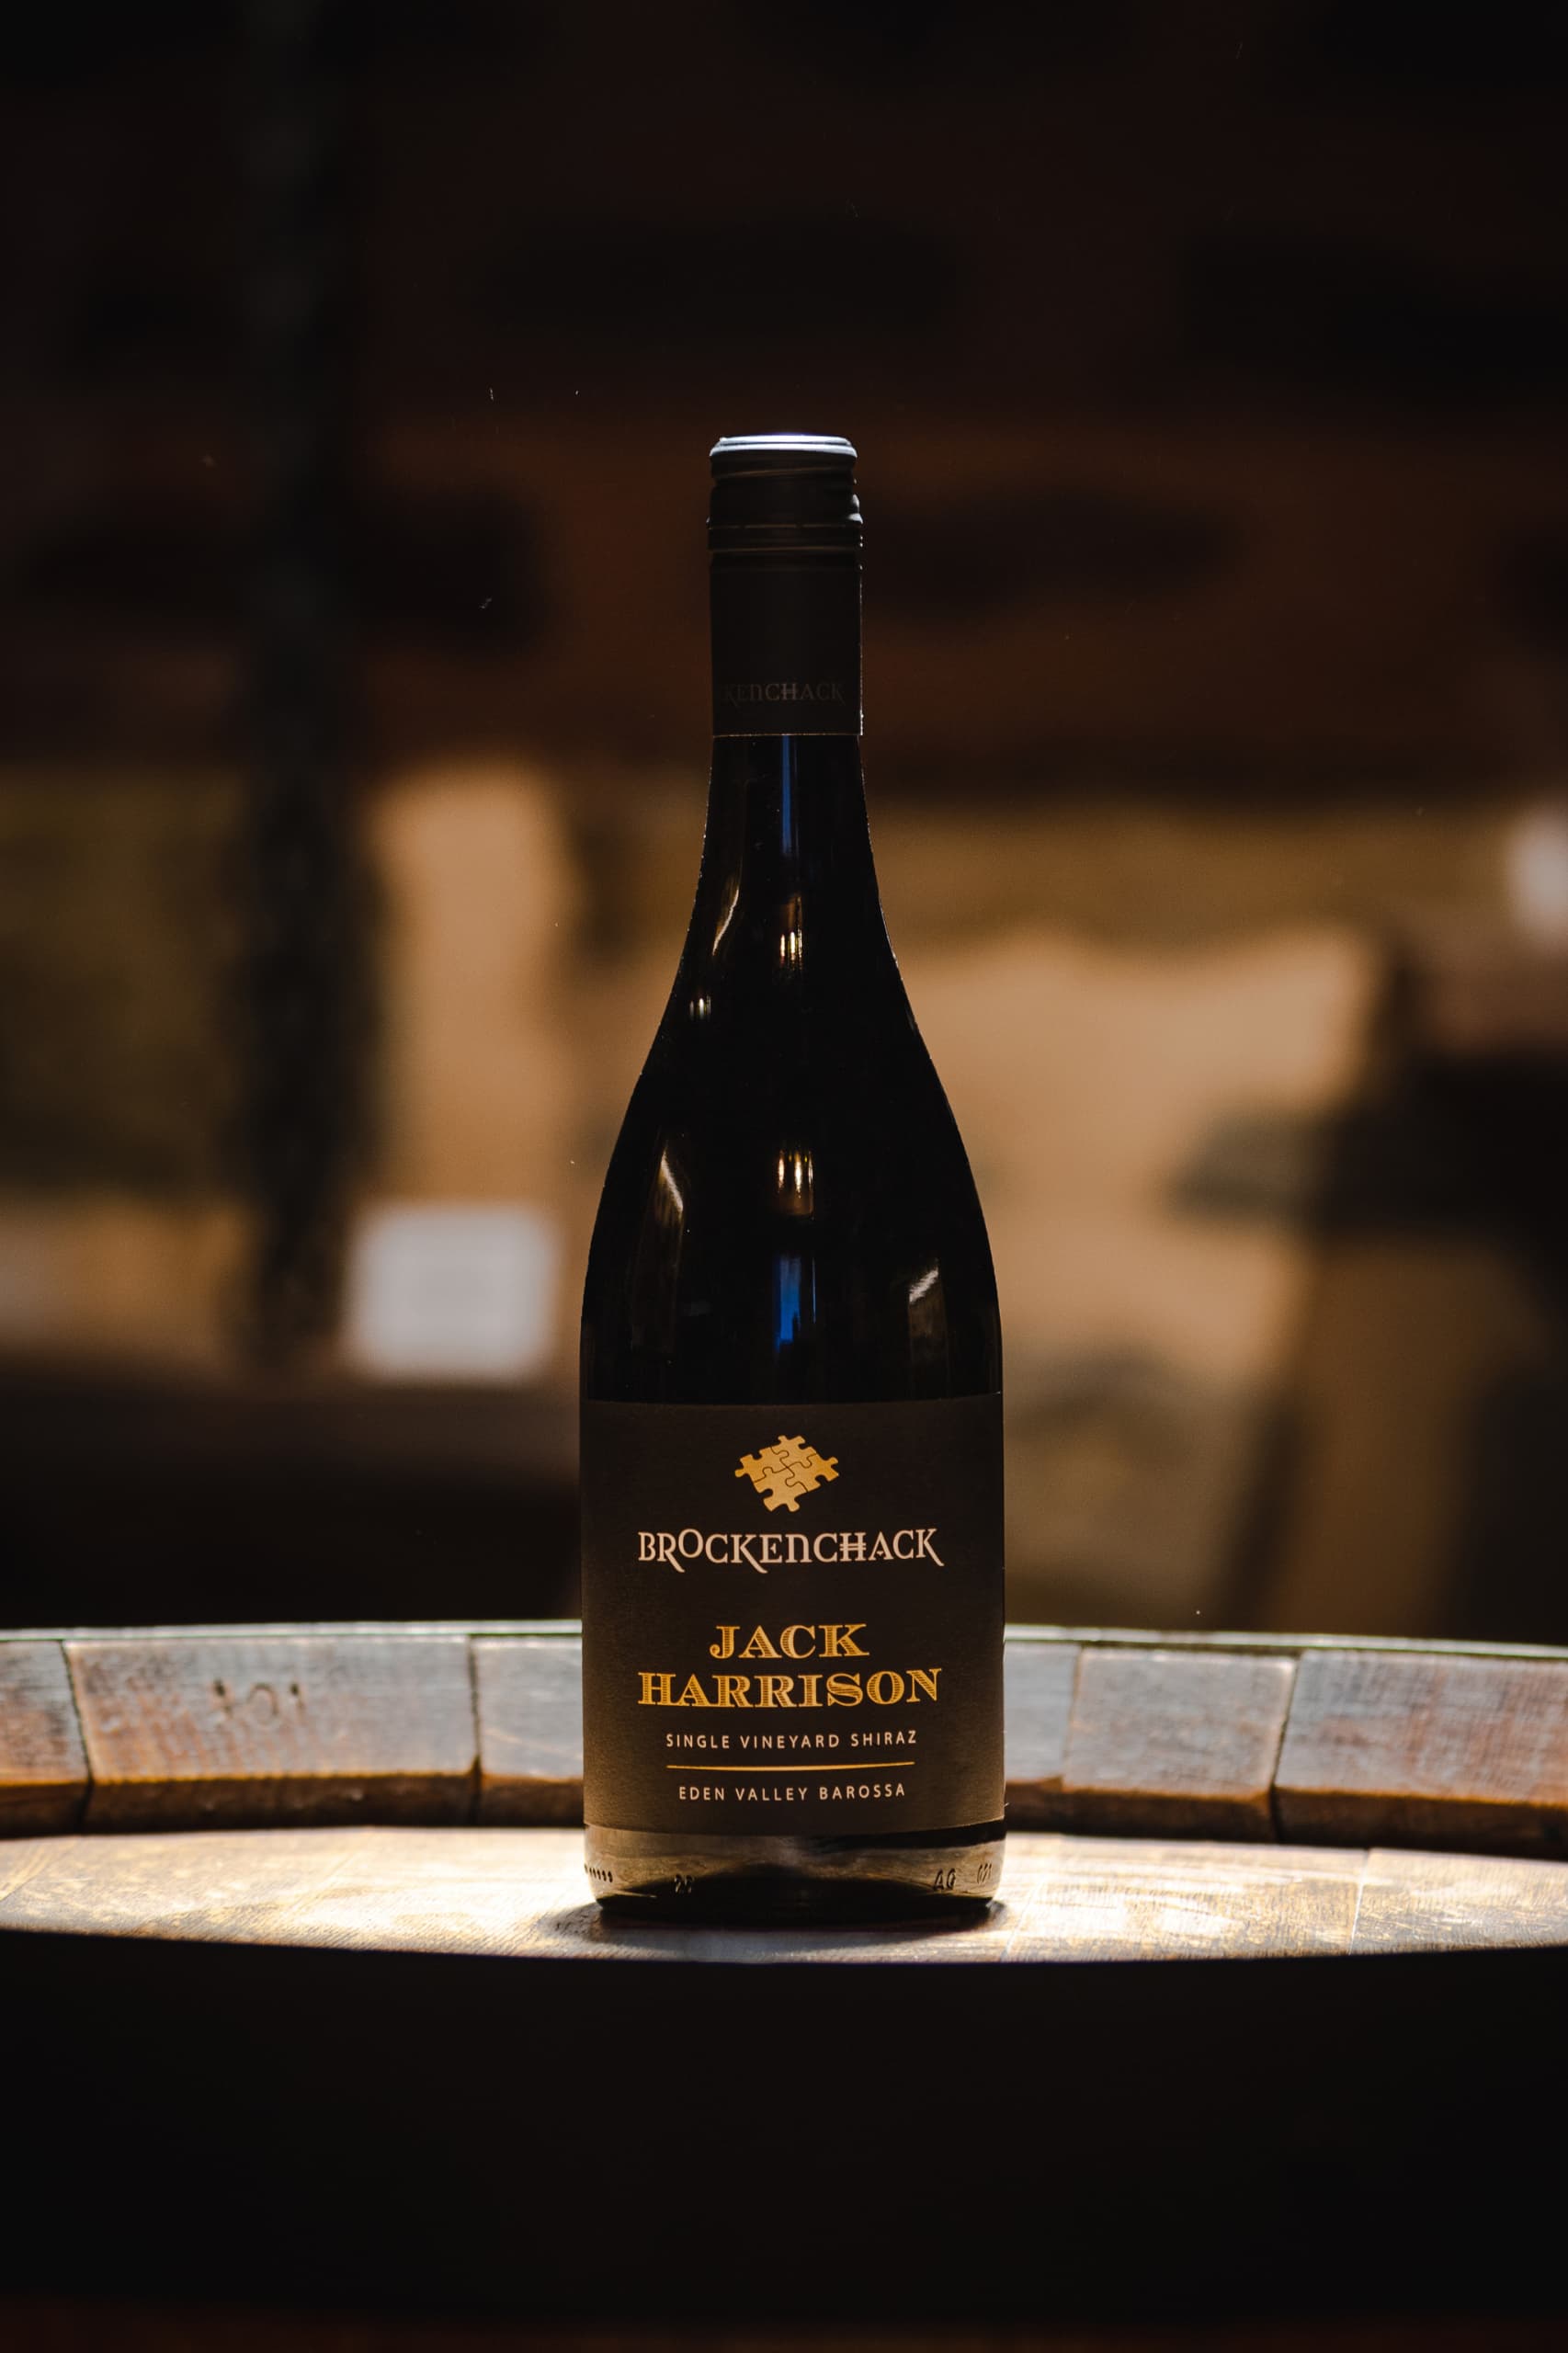 A bottle of Jack Harrison single vineyard Shiraz from Brockenchack Wines sitting on a wine barrel